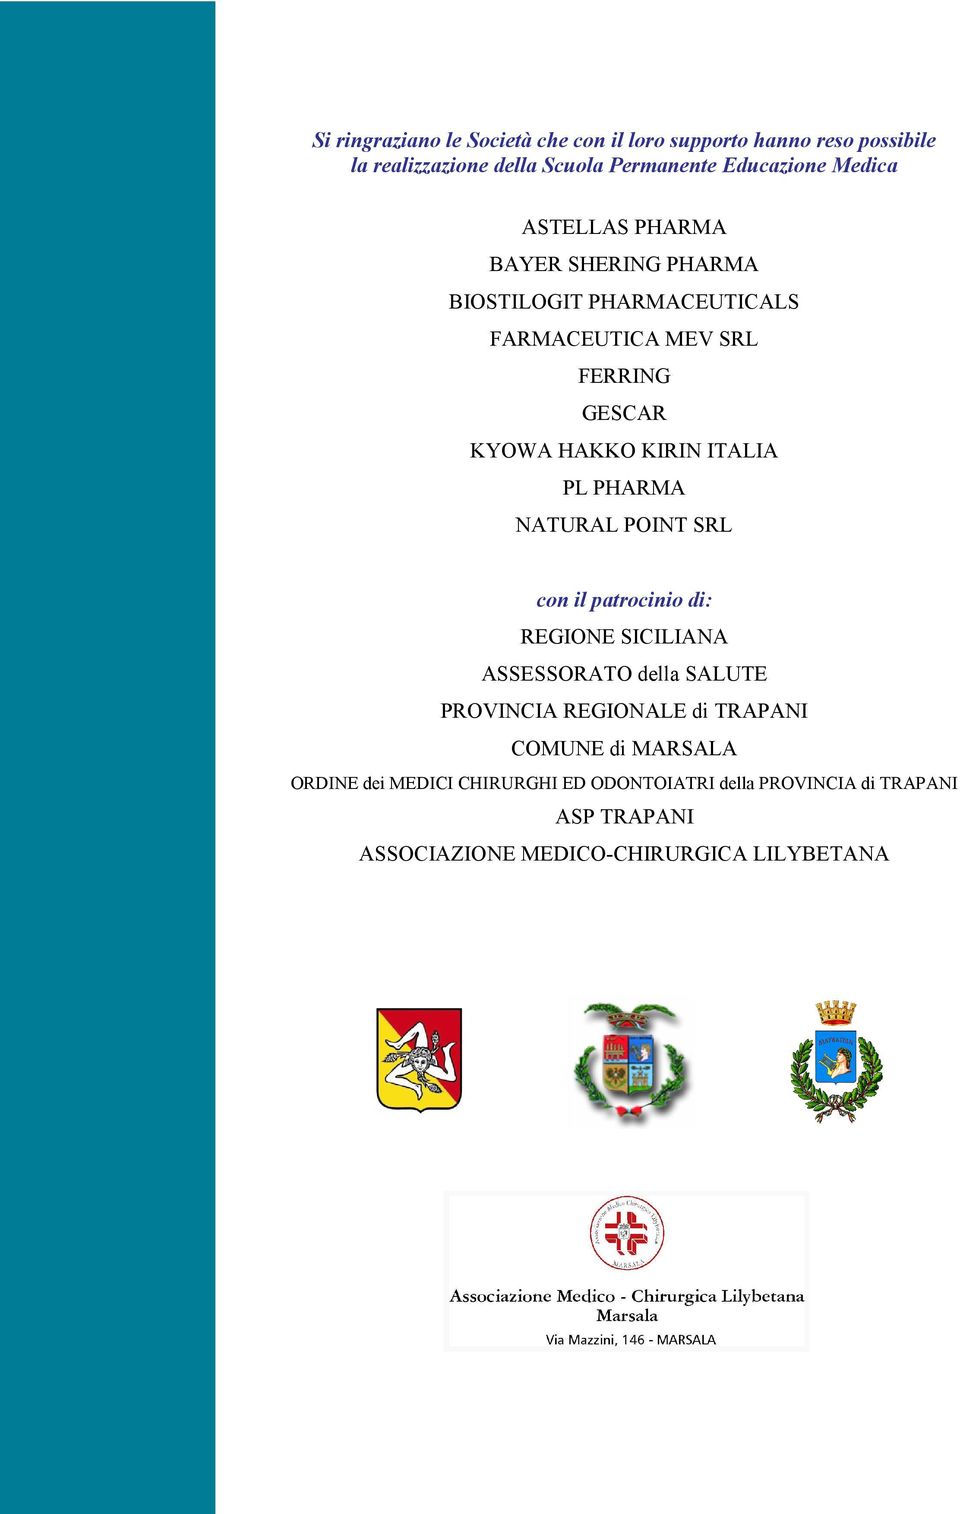 PHARMA NATURAL POINT SRL con il patrocinio di: REGIONE SICILIANA ASSESSORATO della SALUTE PROVINCIA REGIONALE di TRAPANI COMUNE di